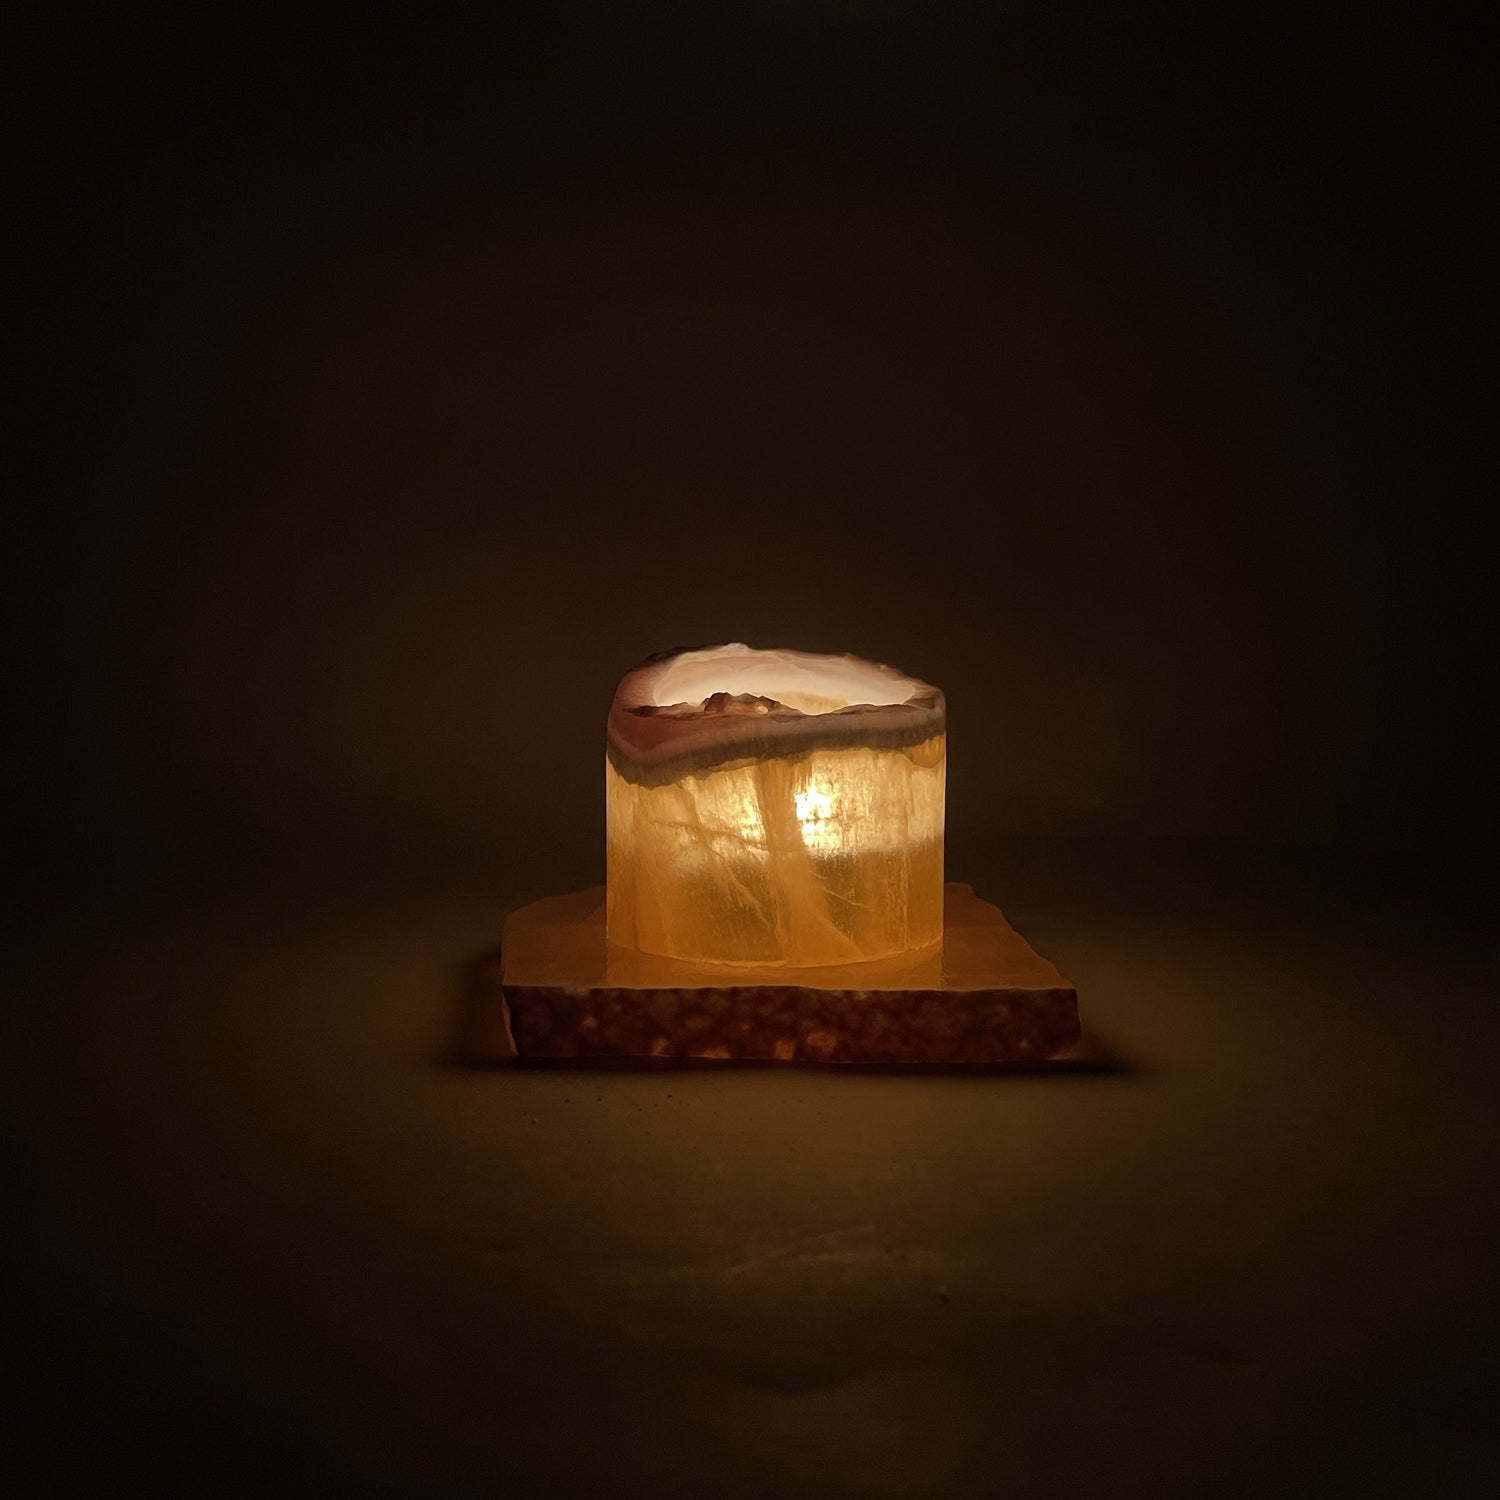 Pixie Dust Wax melts-2.25oz – Pretty Little Light Candle Co.